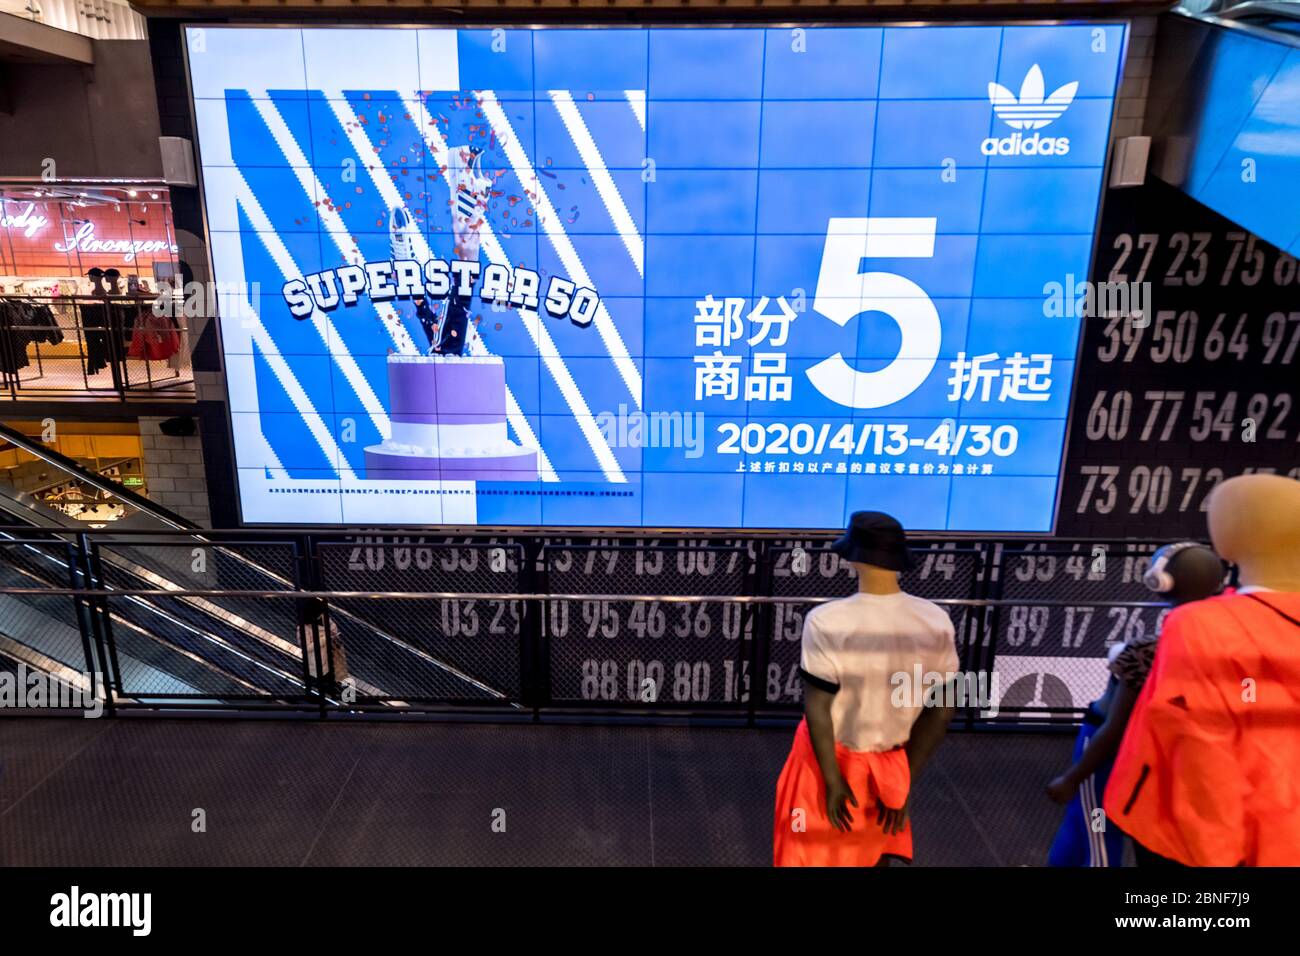 La vista interior de los clientes que seleccionan y compran productos en  una tienda Adidas, que lanza un 50% de descuento en la promoción, Shanghai,  China, 24 de abril de 2020. *